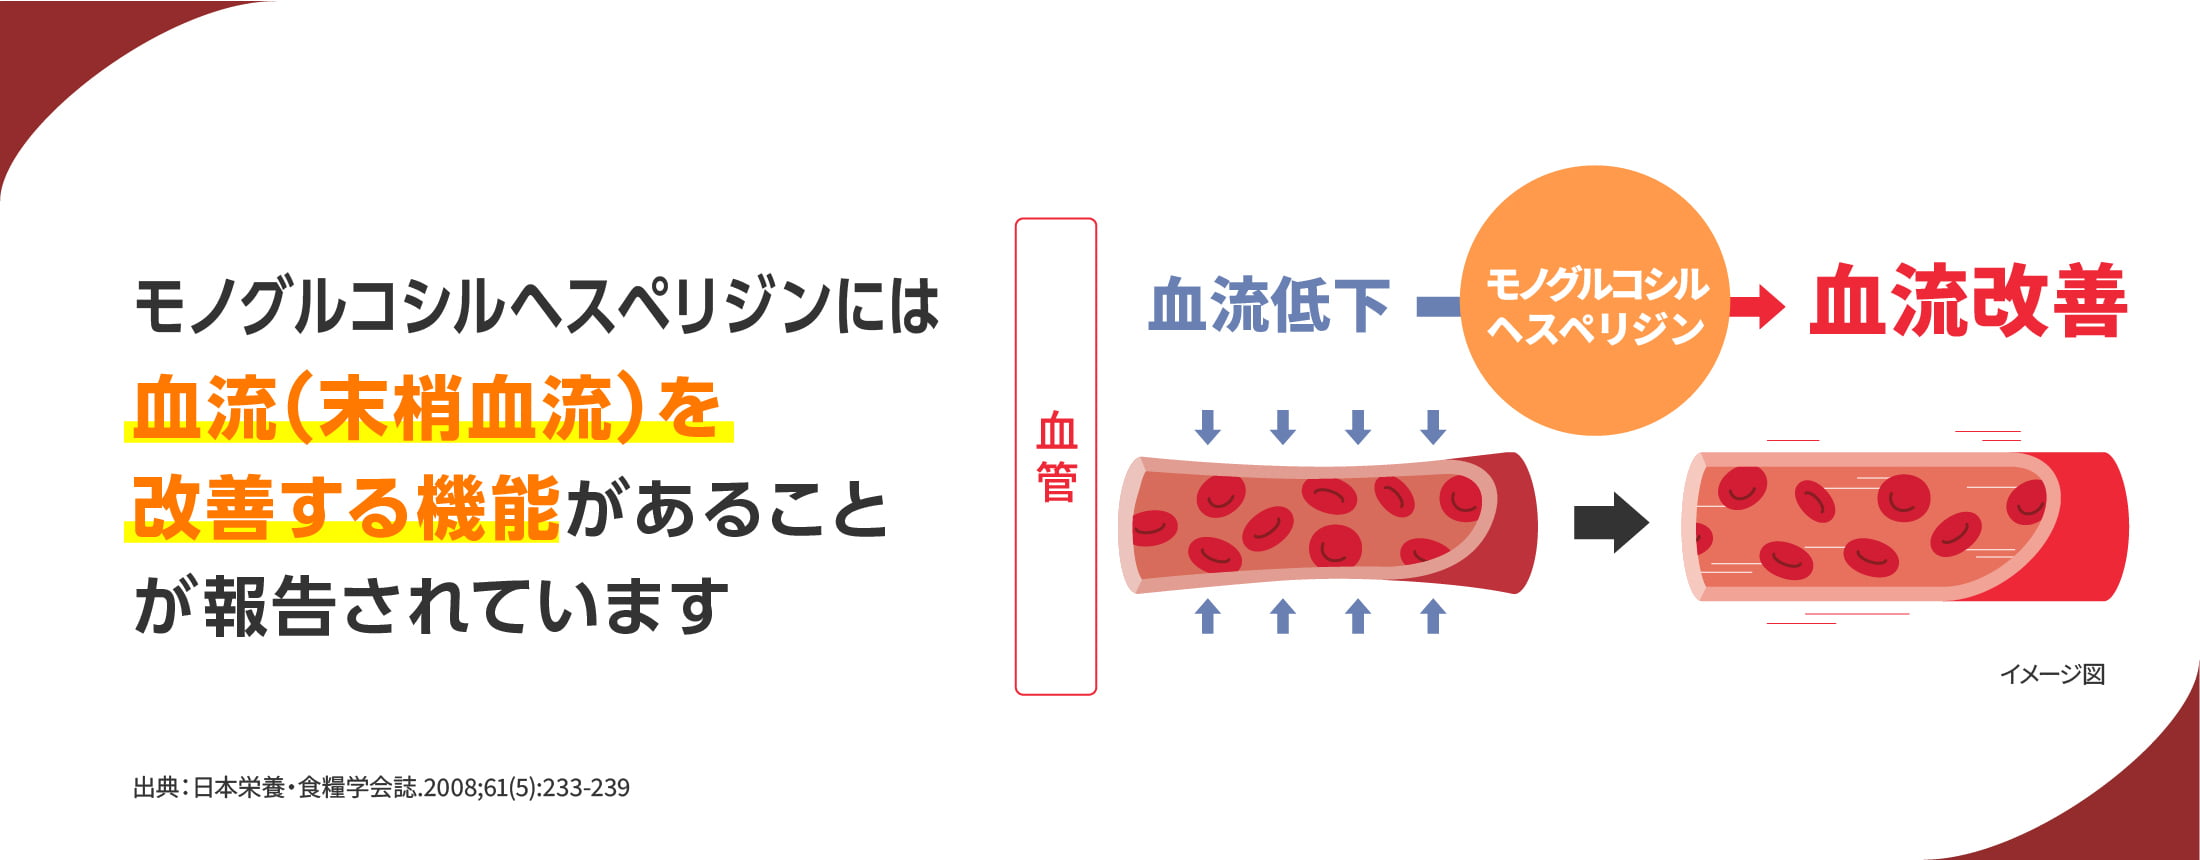 モノグルコシルヘスペリジンには血流 (末梢血流)を改善する機能があることが報告されています。出典：日本栄養・食糧学会誌.2008;61(5):233-239